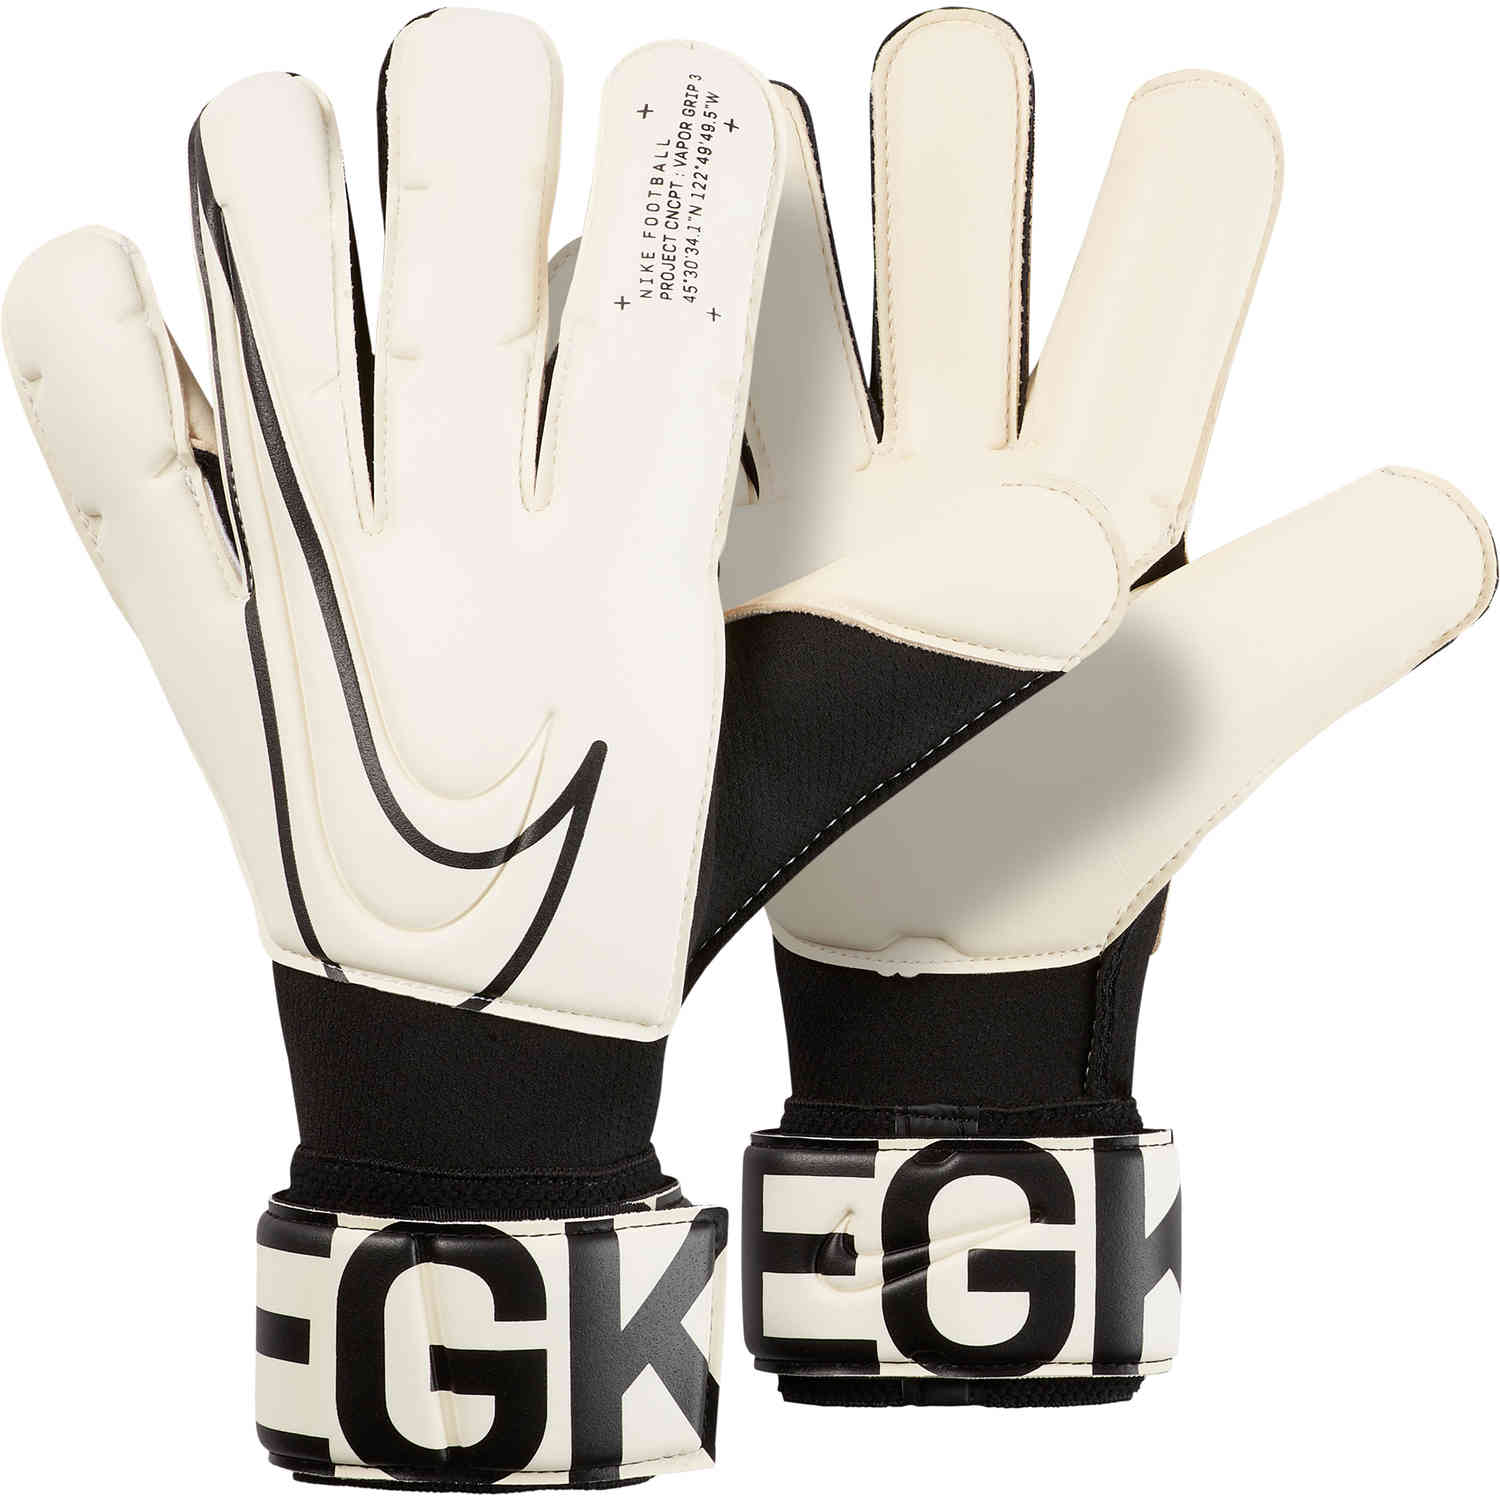 nike goalie gloves size 5